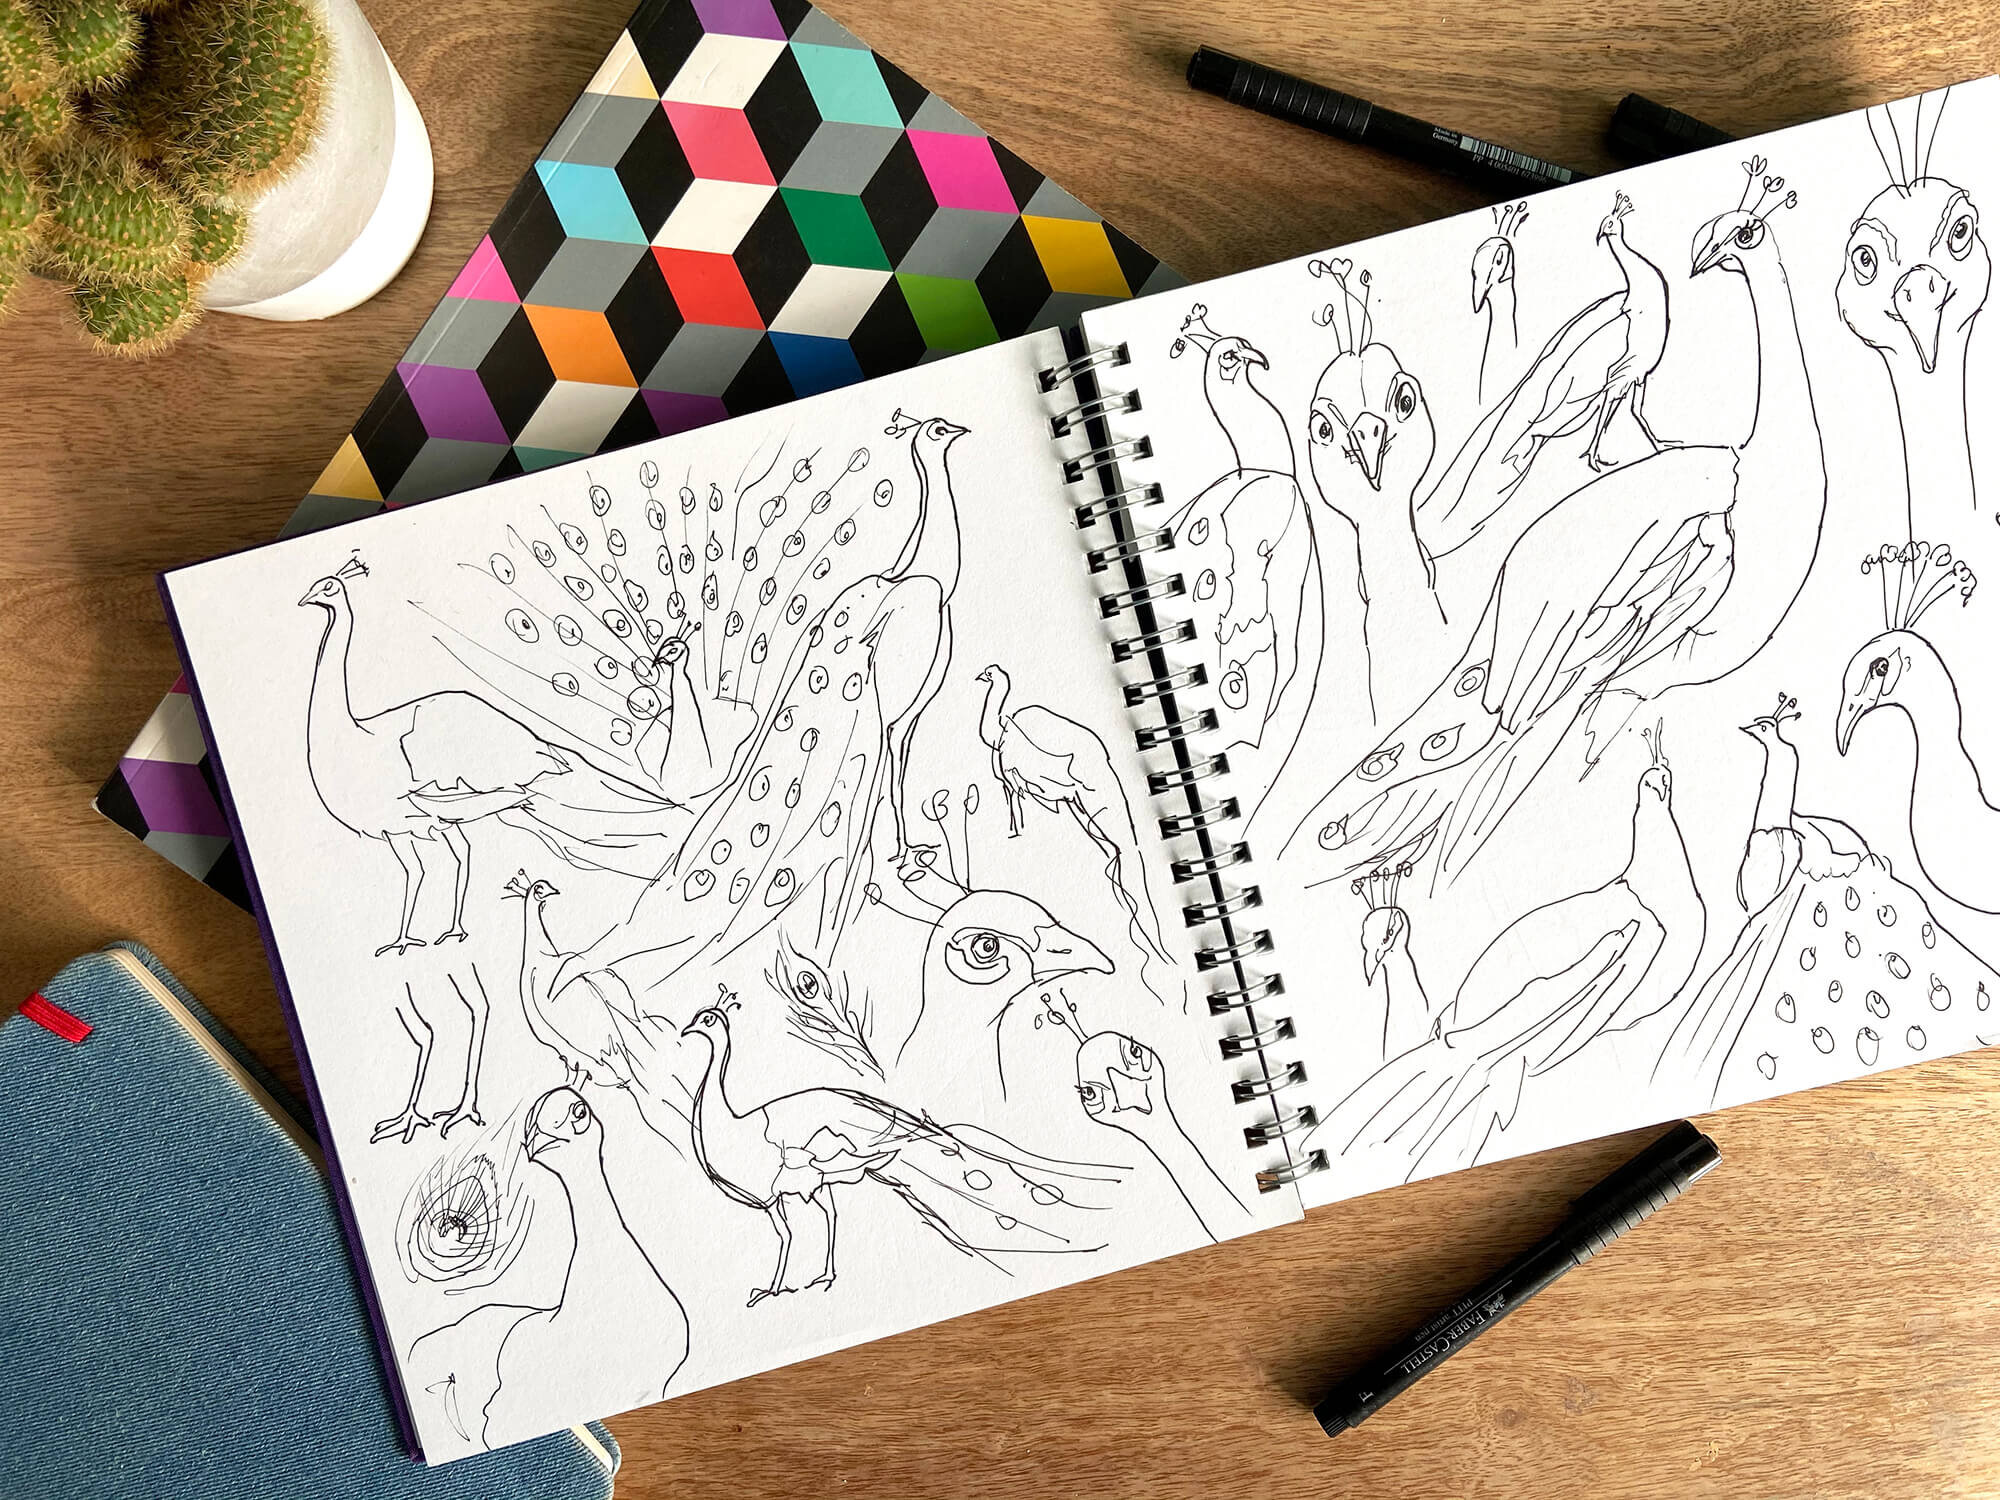 peacock-sketchbook-drawings.jpg